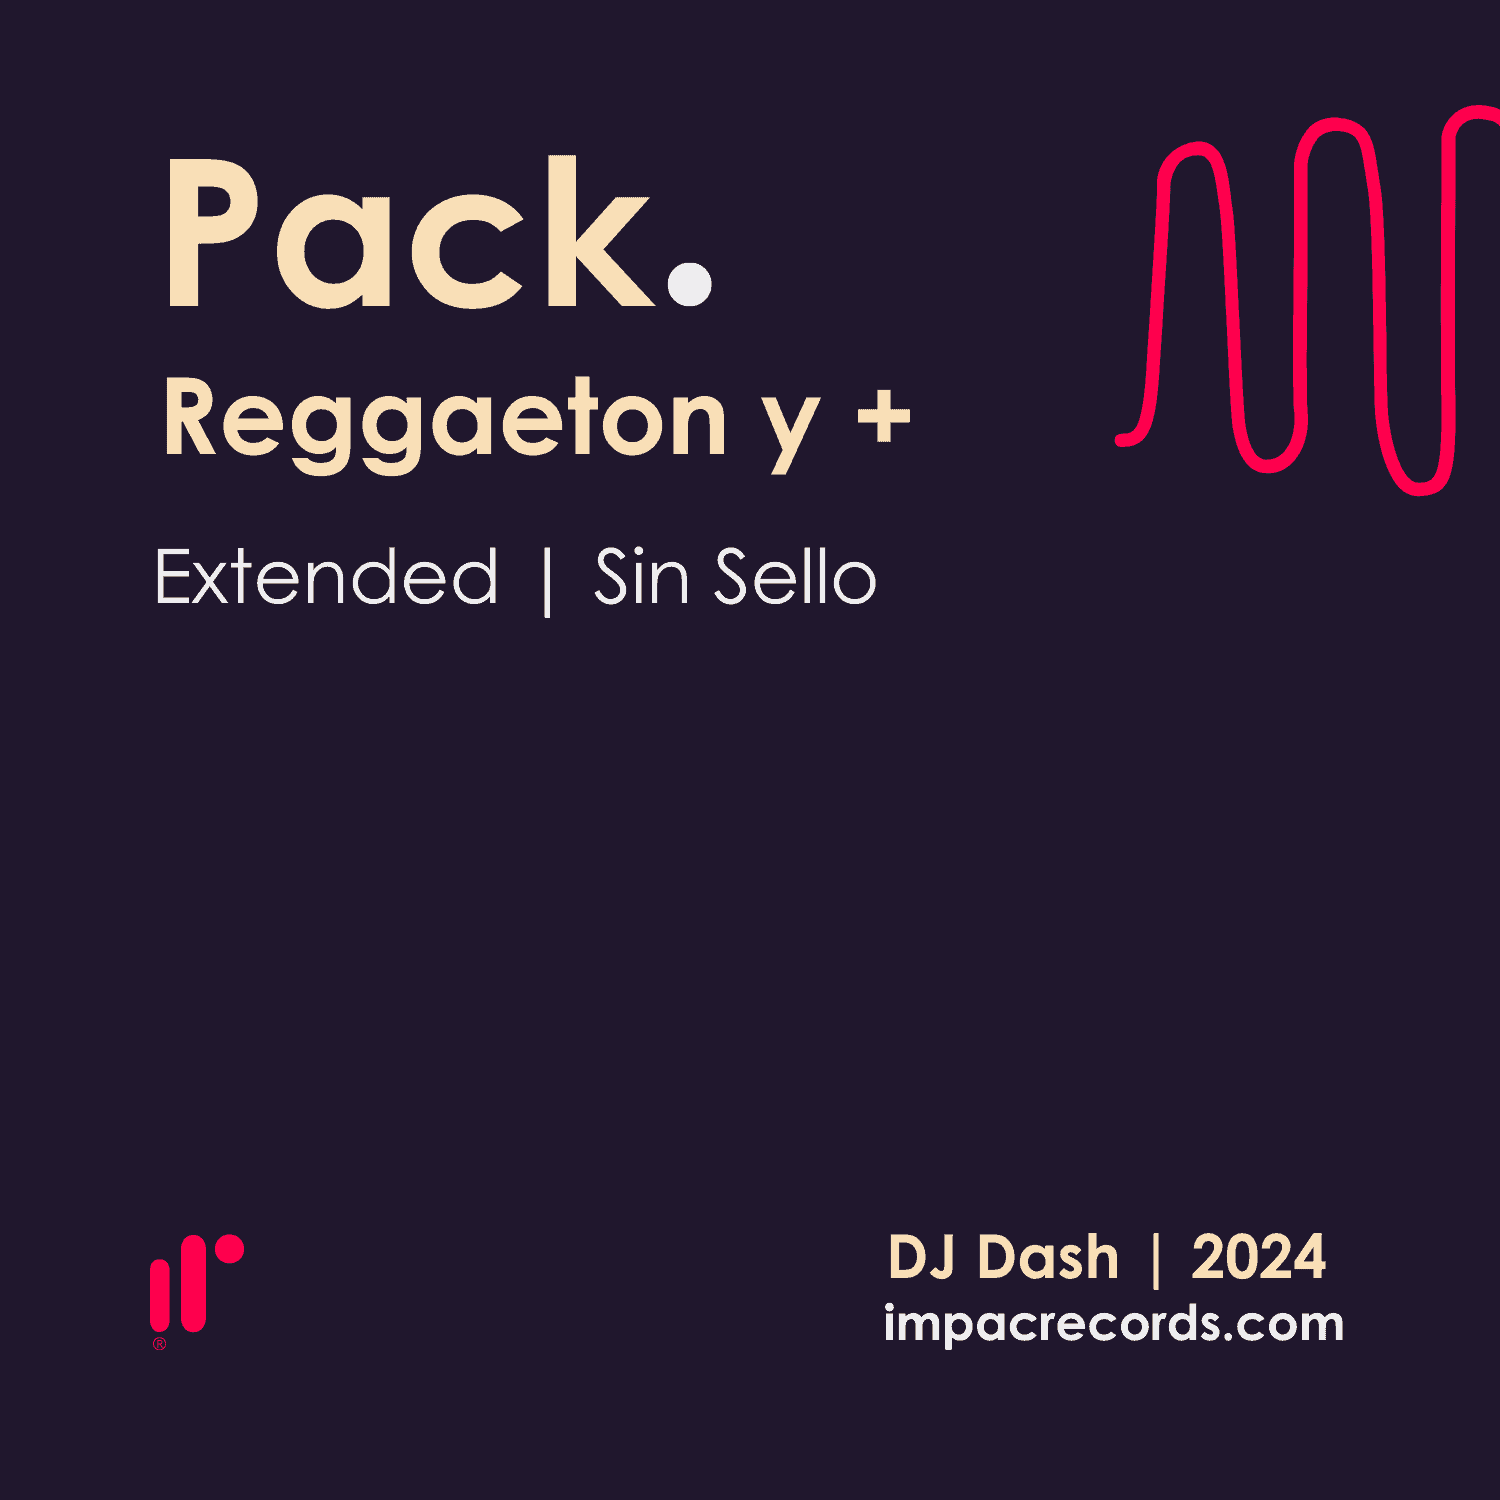 Pack Reggaeton y mas DJ Dash 2024